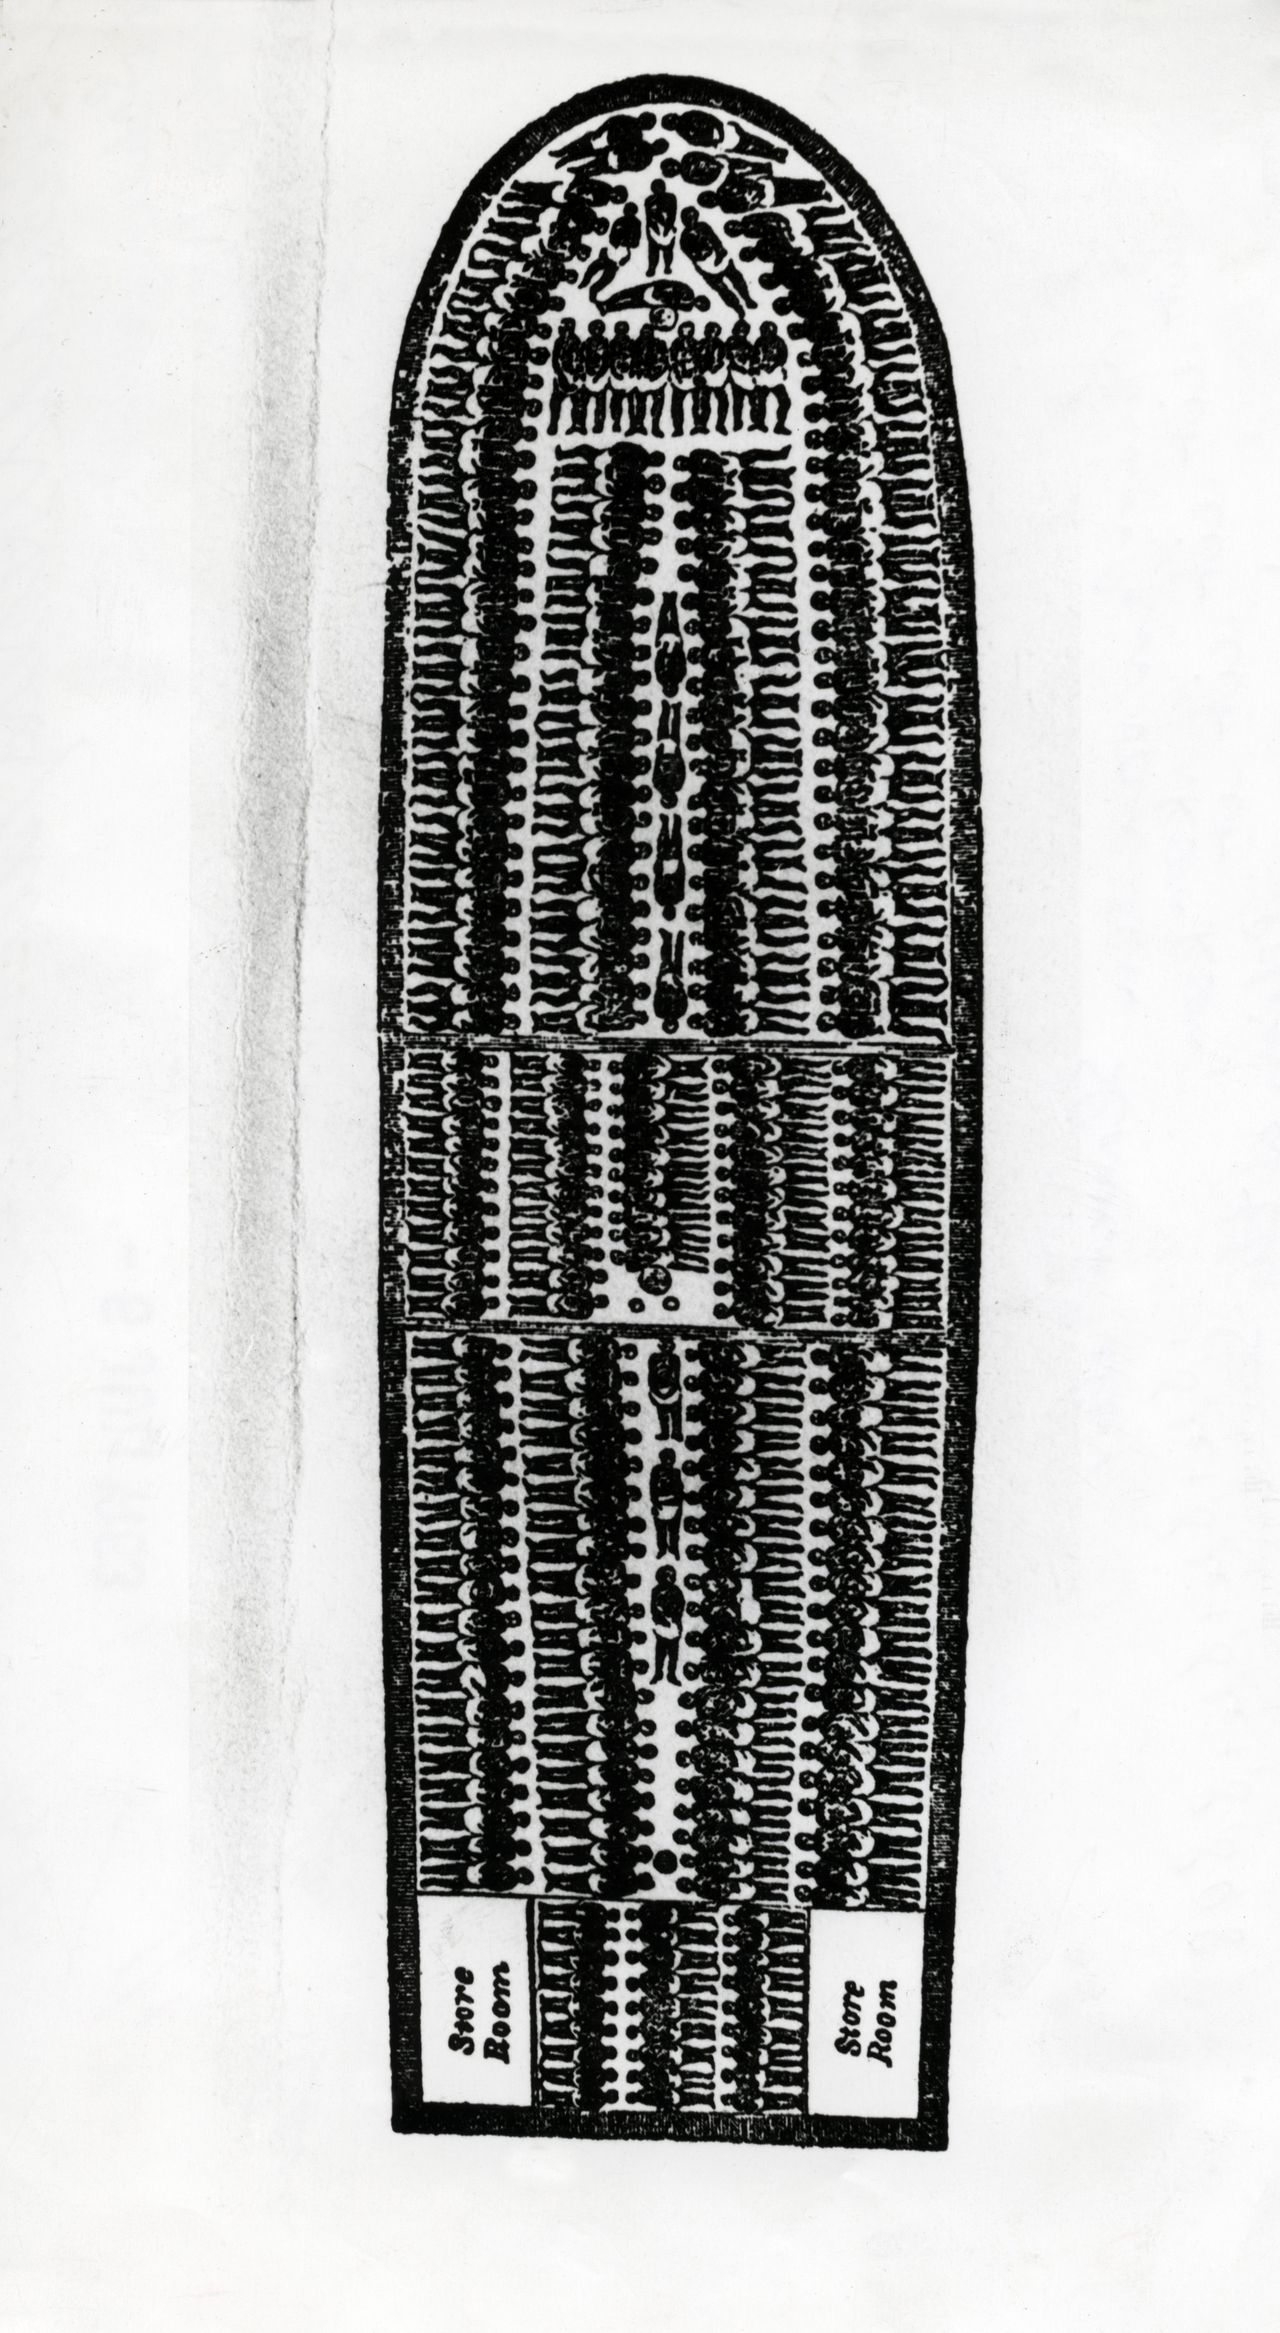 Tekening van de verdeling van negerslaven over het dek van een slavenschip, 'het stuwplan', uit een boek voor de afschaffing van de slavernij uit 1808.